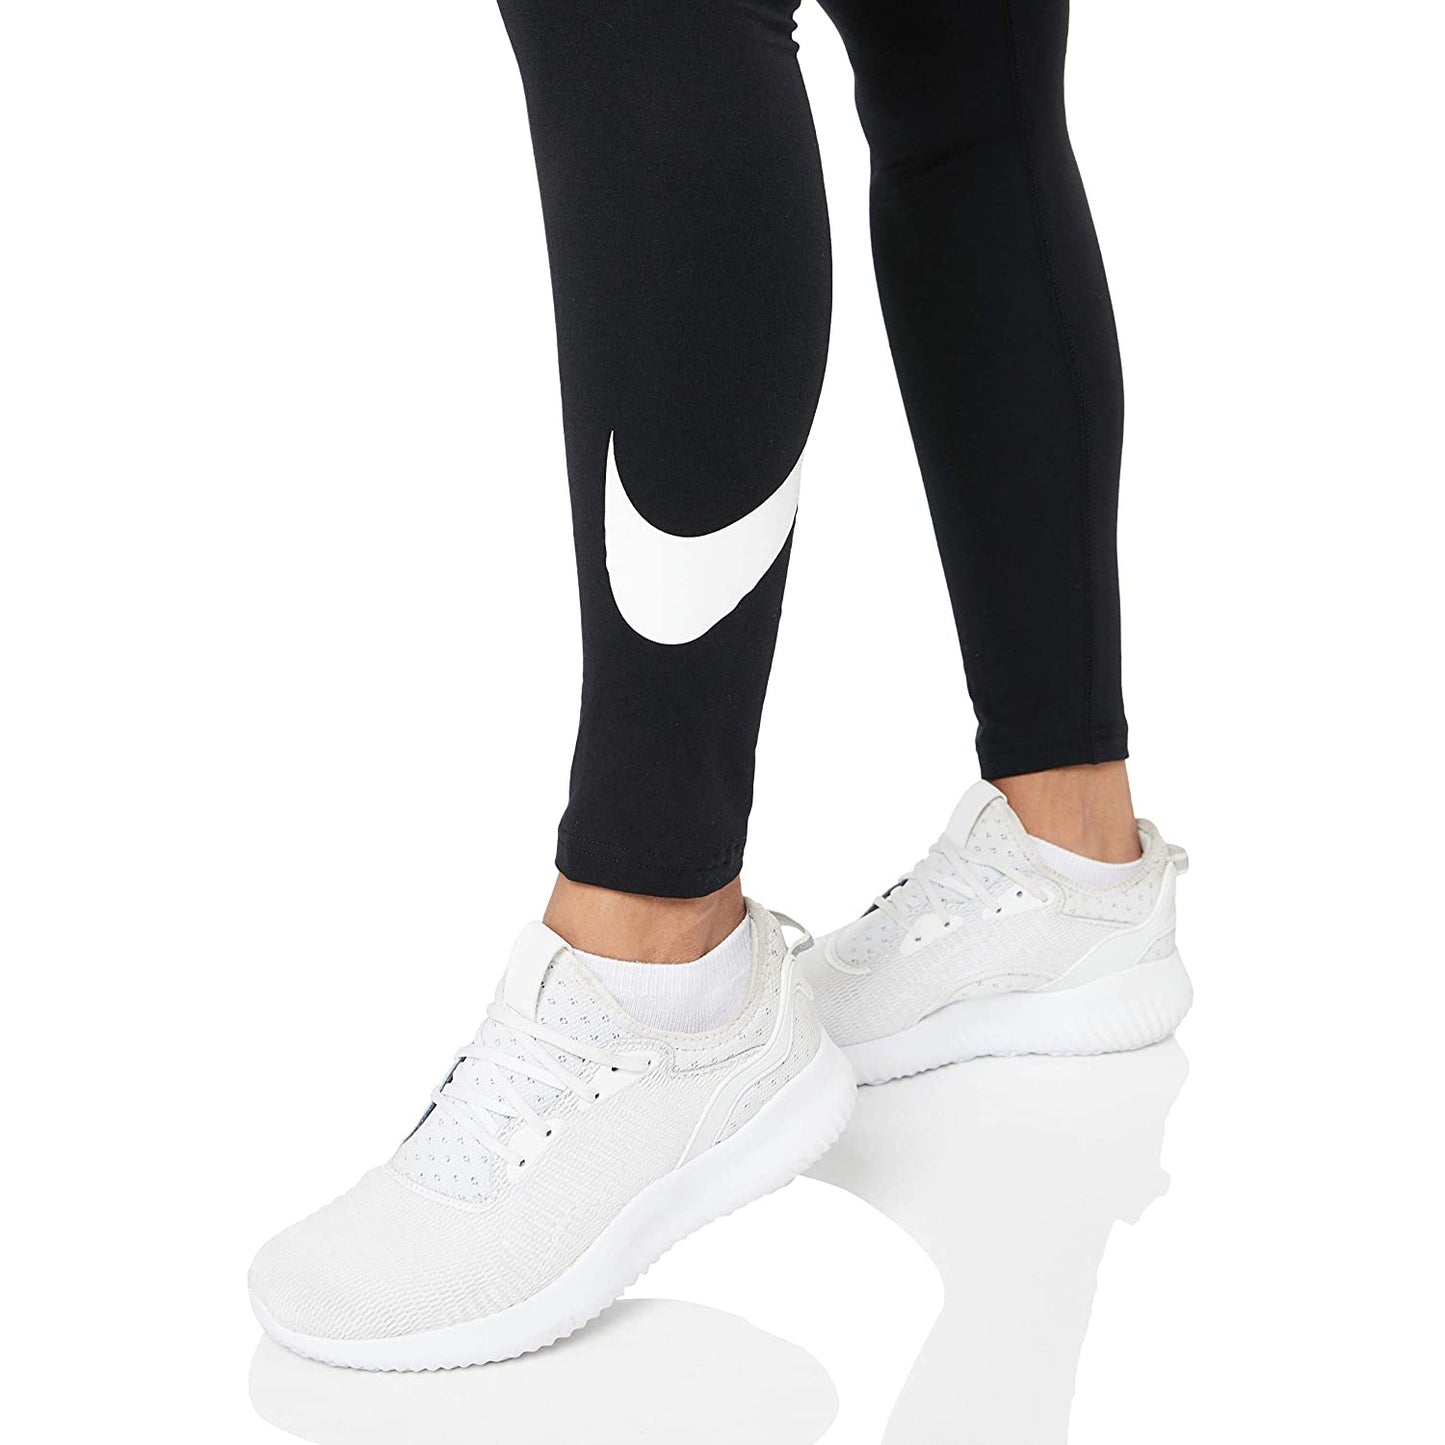 Nike Women's Swoosh Tights